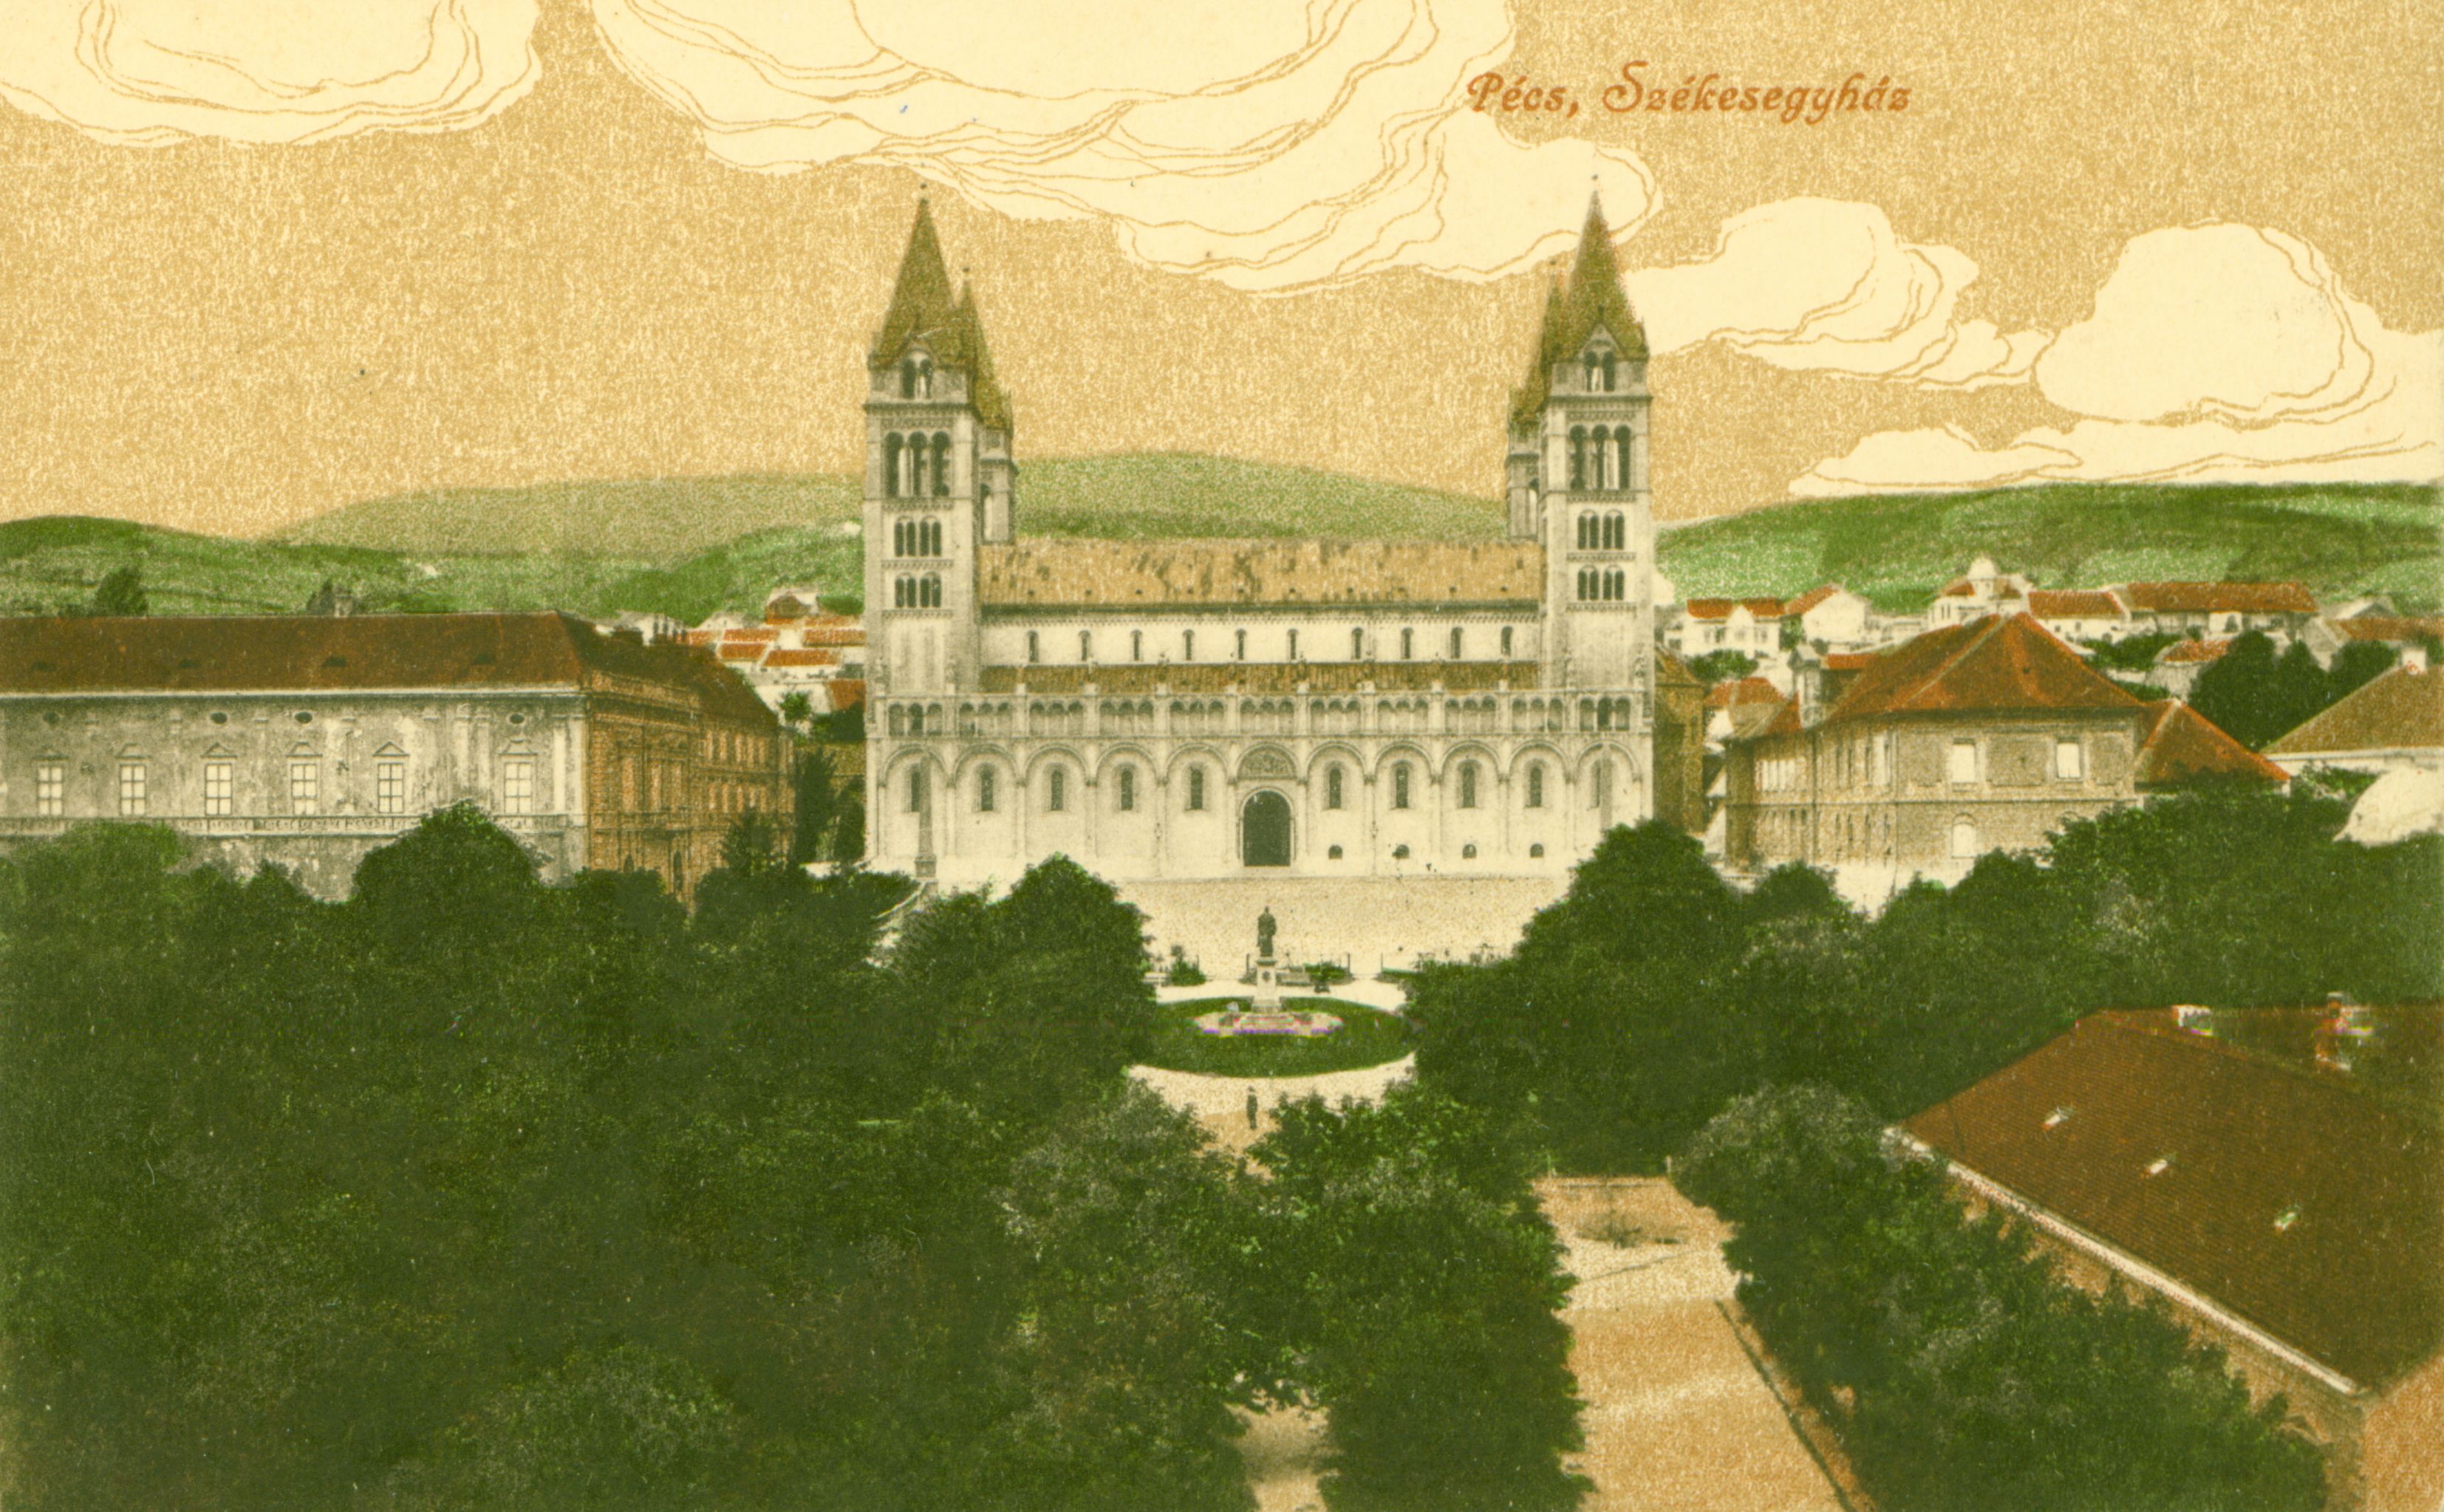 Pécs Székesegyház 1914-ből